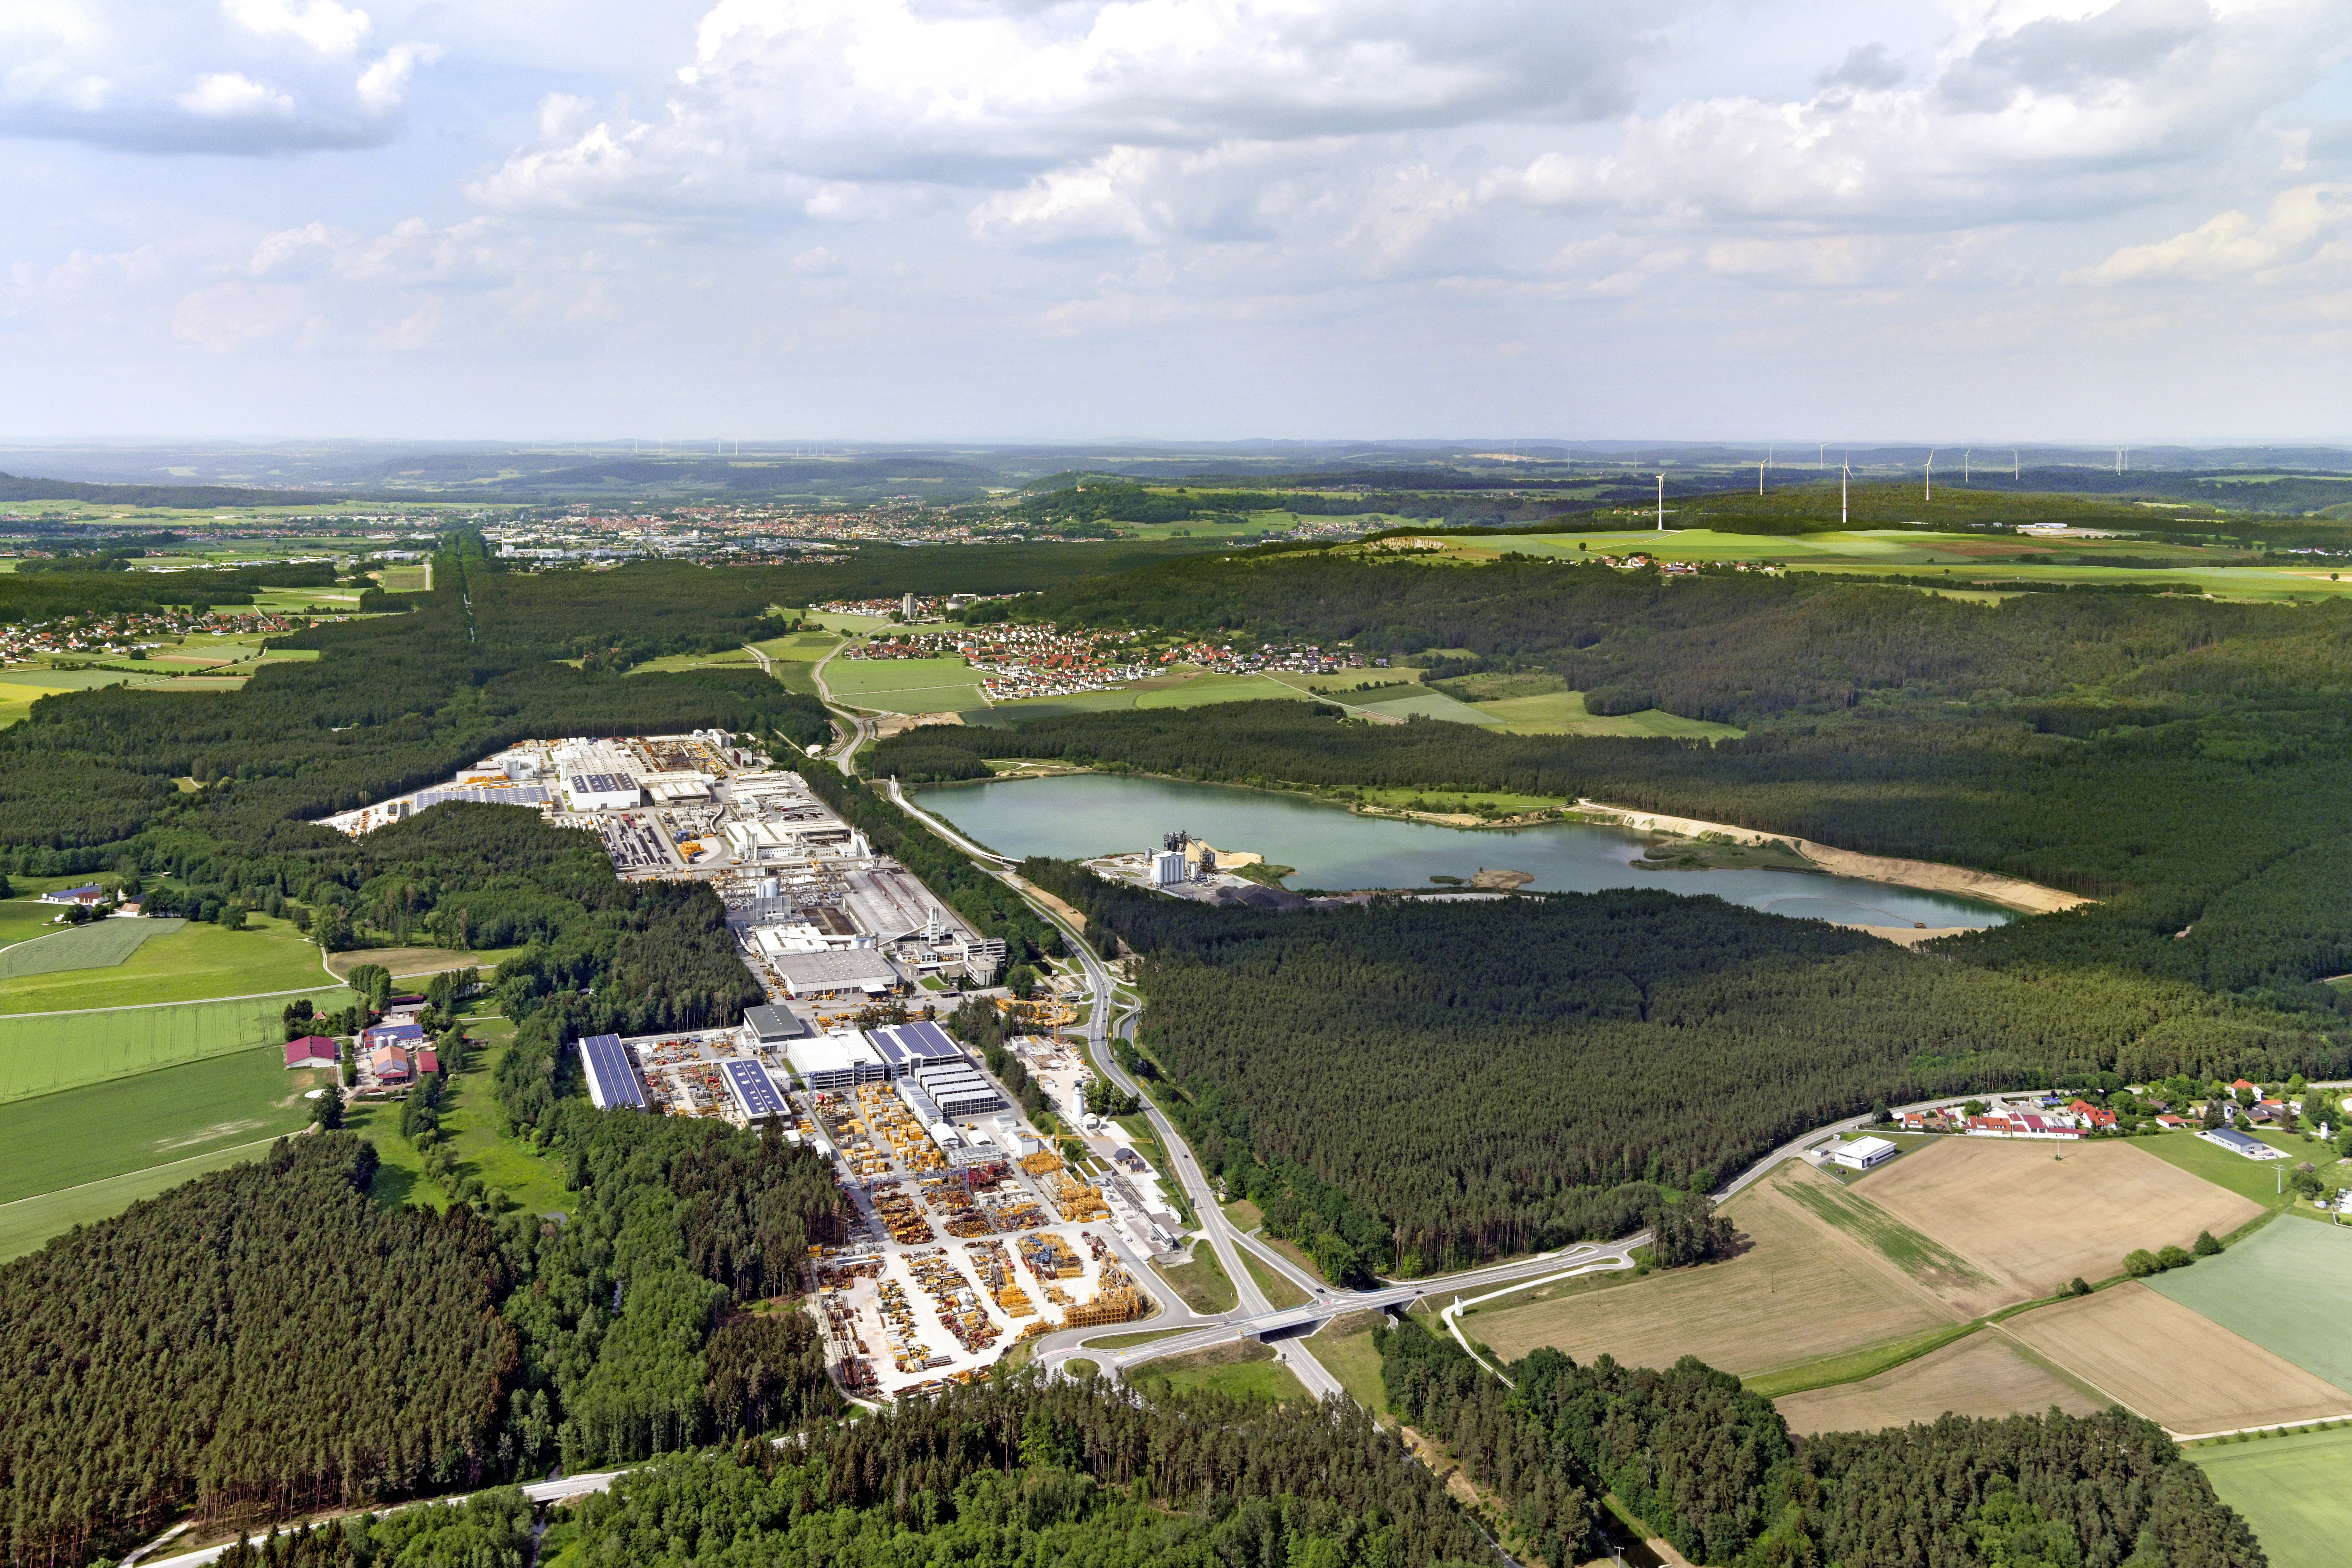 Panoramaaufnahme des gesamten Industriegeländes der Firma Max Bögl mit Blick auf Sengenthal (Vordergrund), Neumarkt in der Oberpfalz (Hintergrund) und den Windenergieanlagen in nordöstlicher Richtung